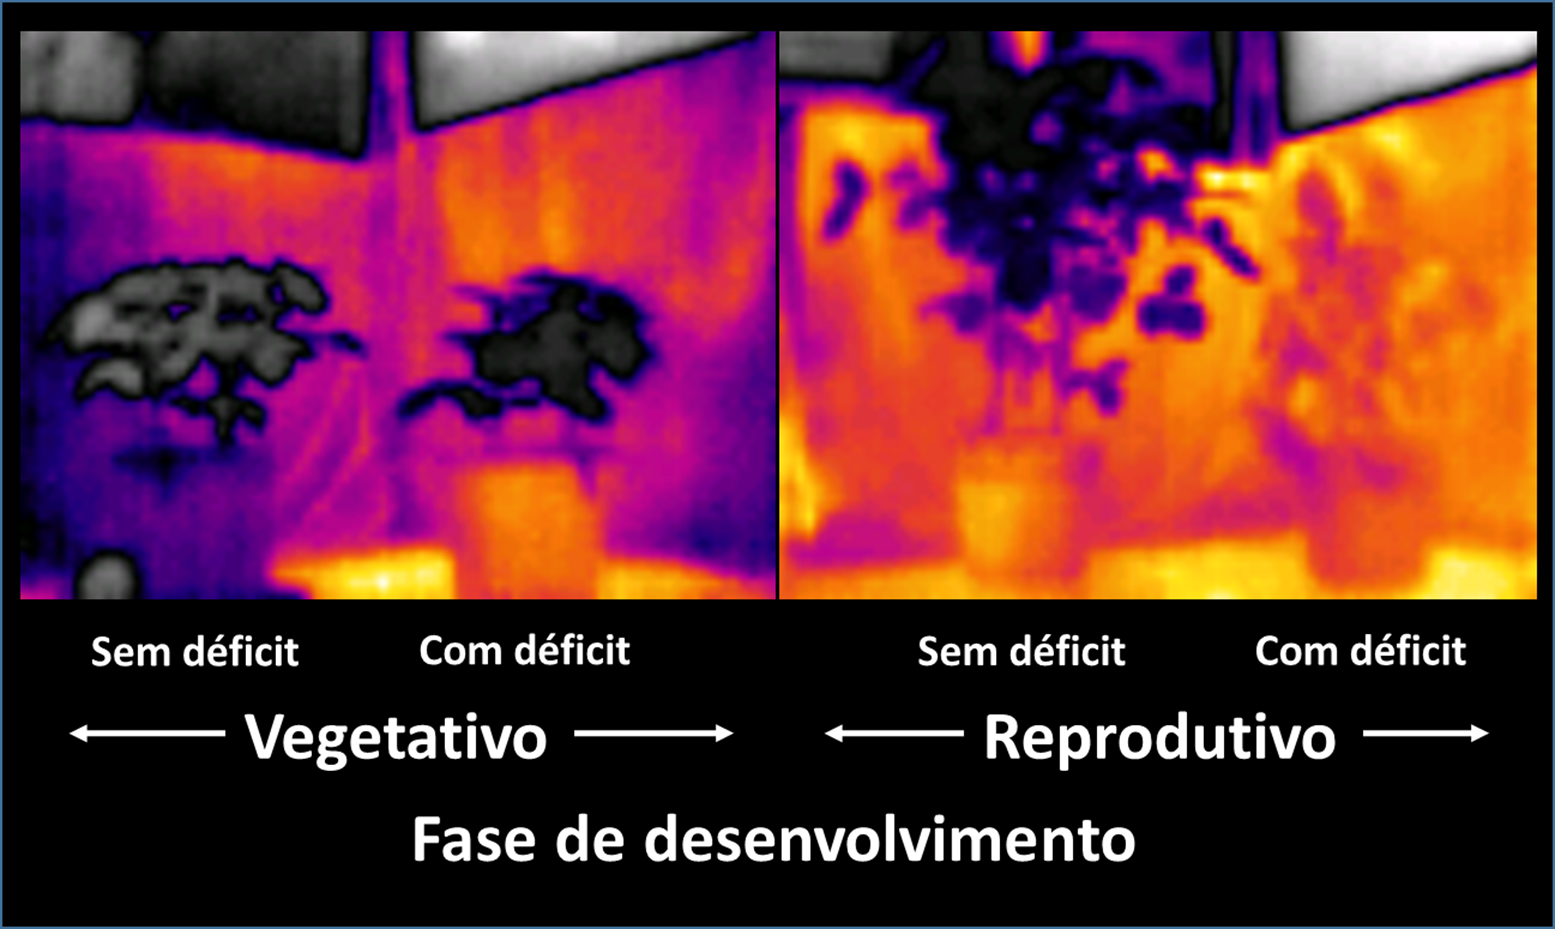 Figura 4 - Imagens RGB e Infravermelho das plantas de soja em duas fases de desenvolvimento (vegetativo e reprodutivo) submetidas ao estresse hídrico. Câmera termal modelo Flir C2. Fonte: Autores.